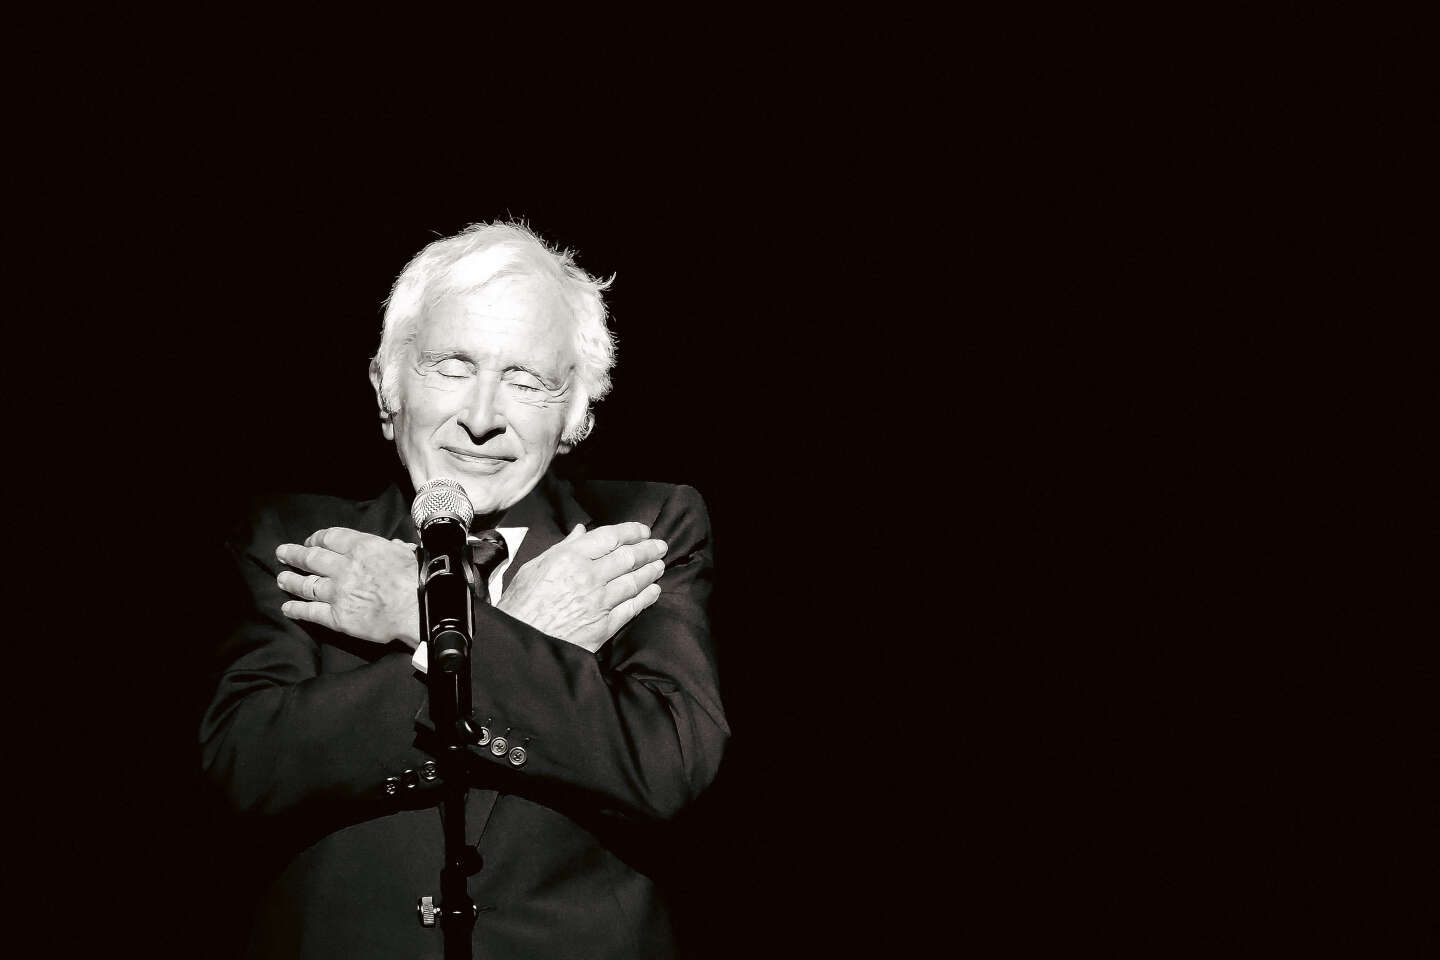 Le chanteur Marcel Amont est décédé à l’âge de 93 ans